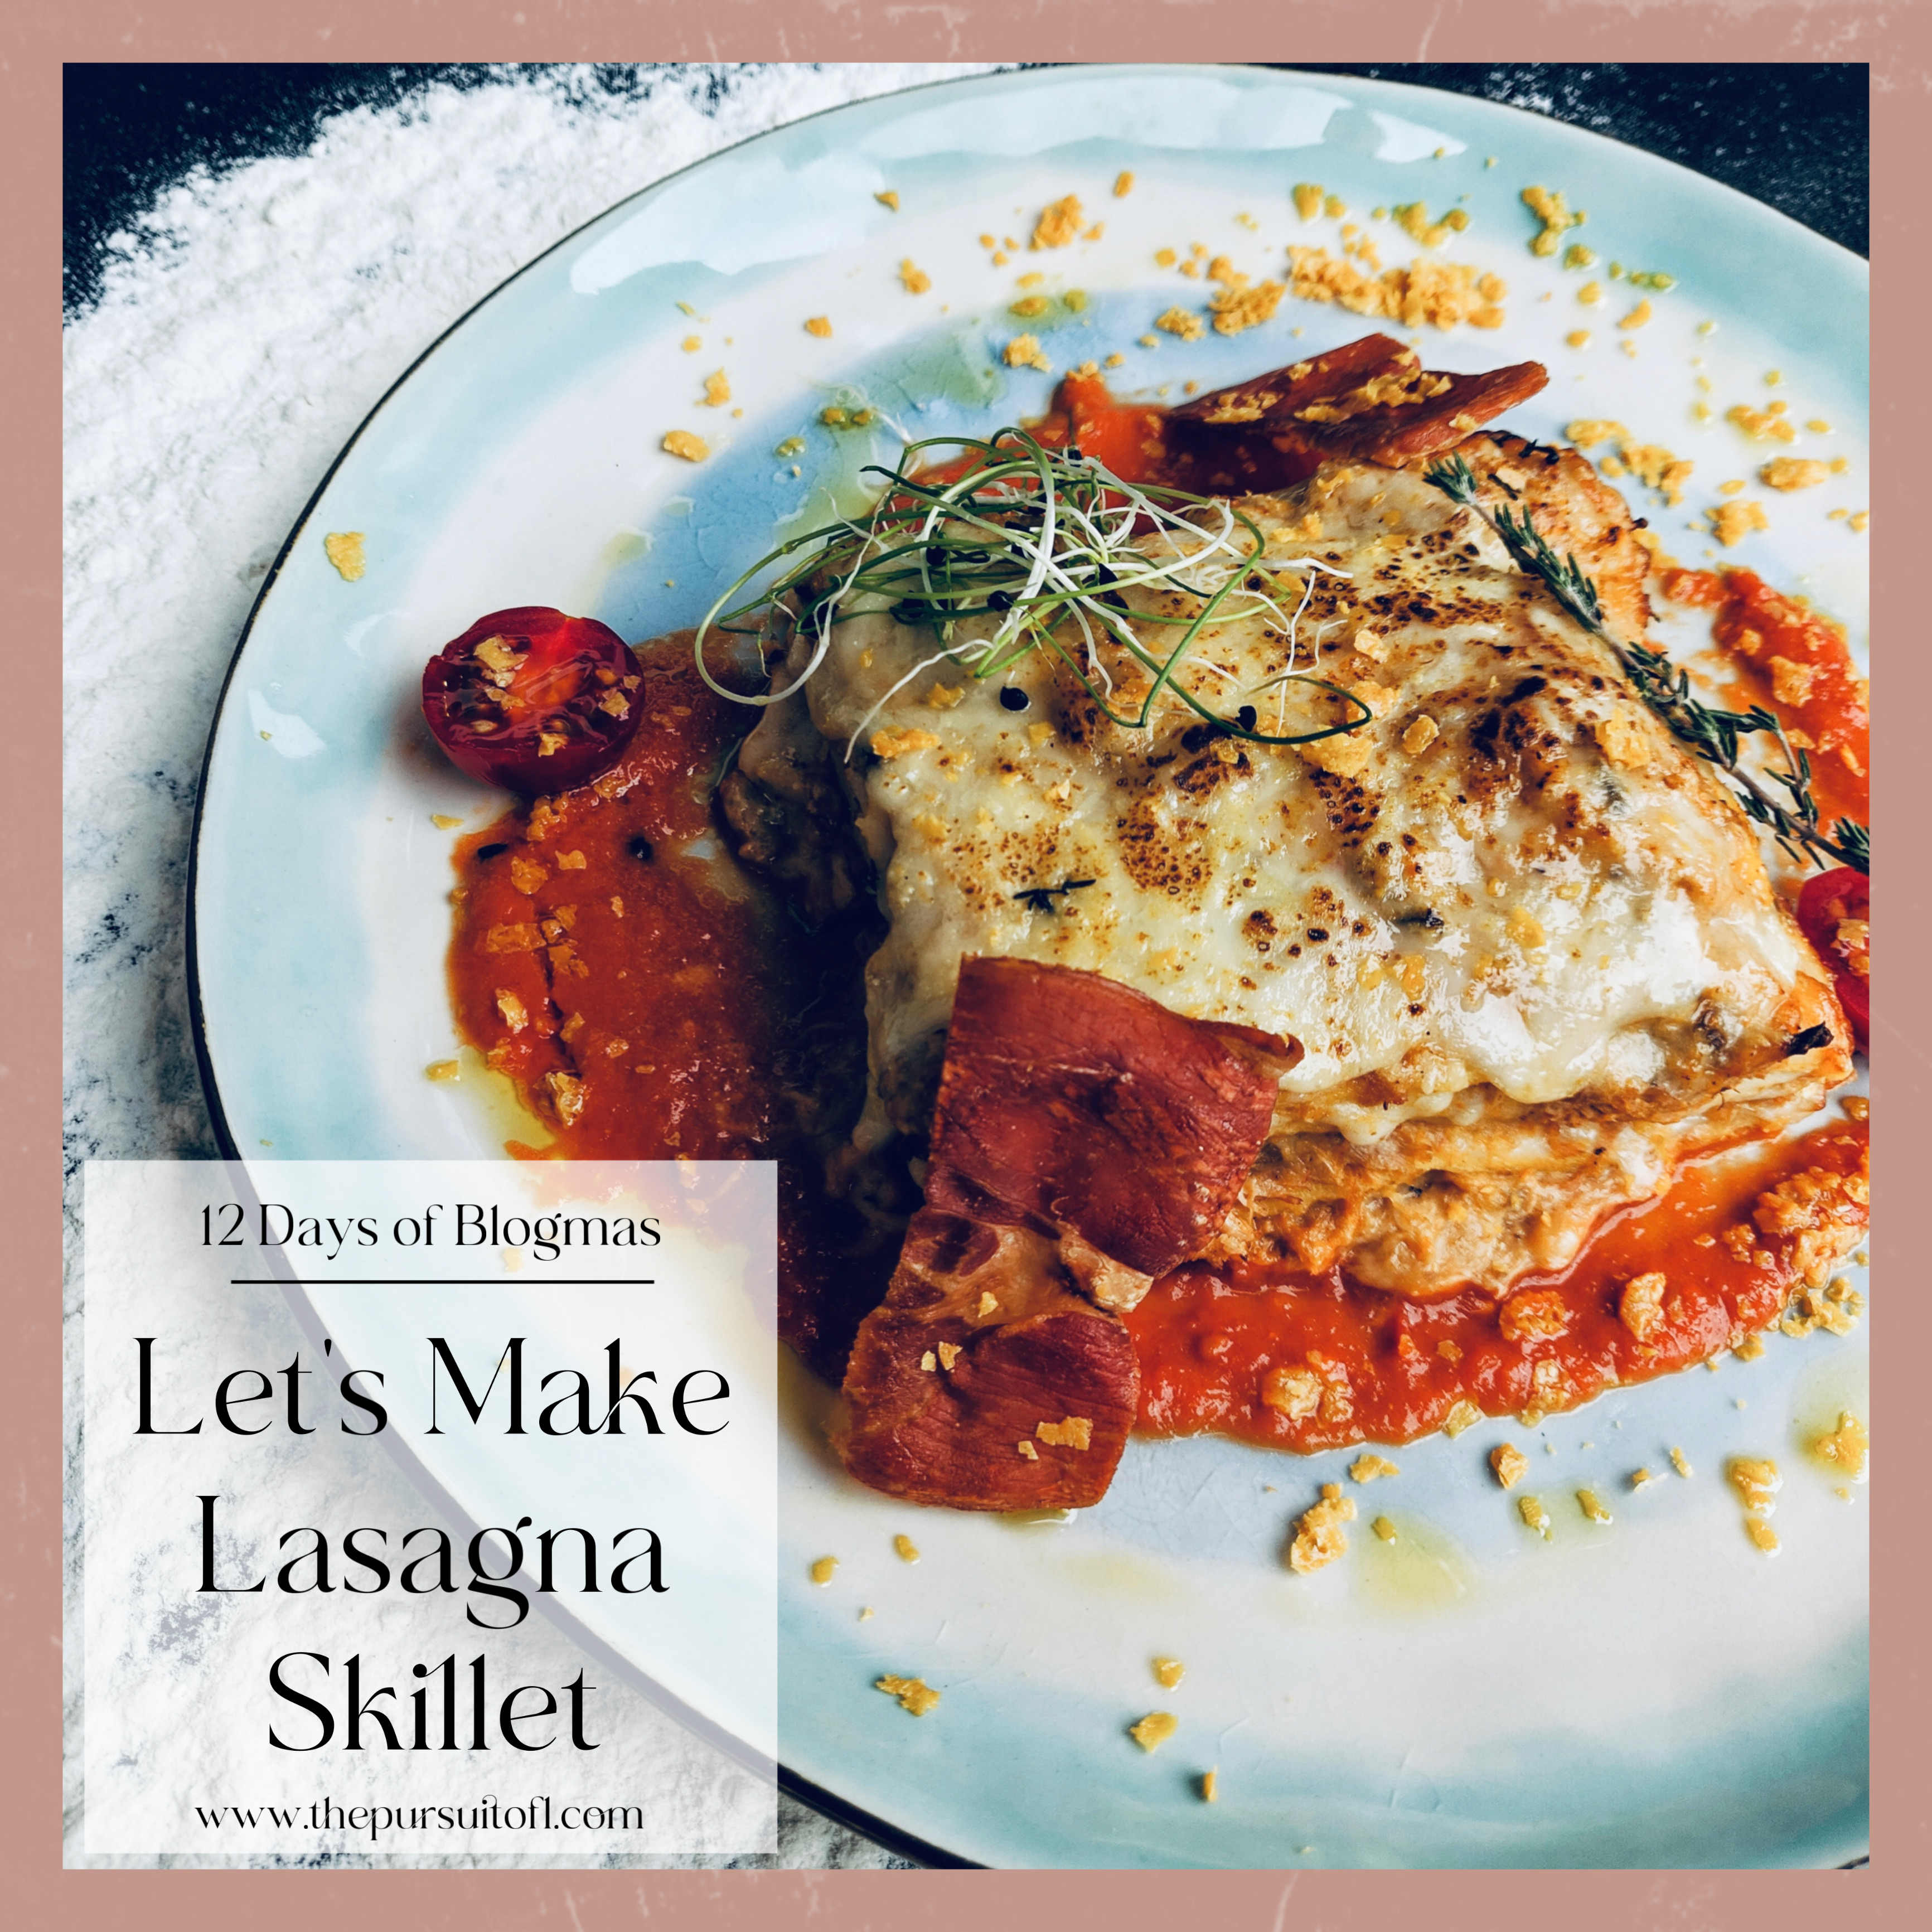 12 Days of Blogmas, Let's Make Lasagna Skillet